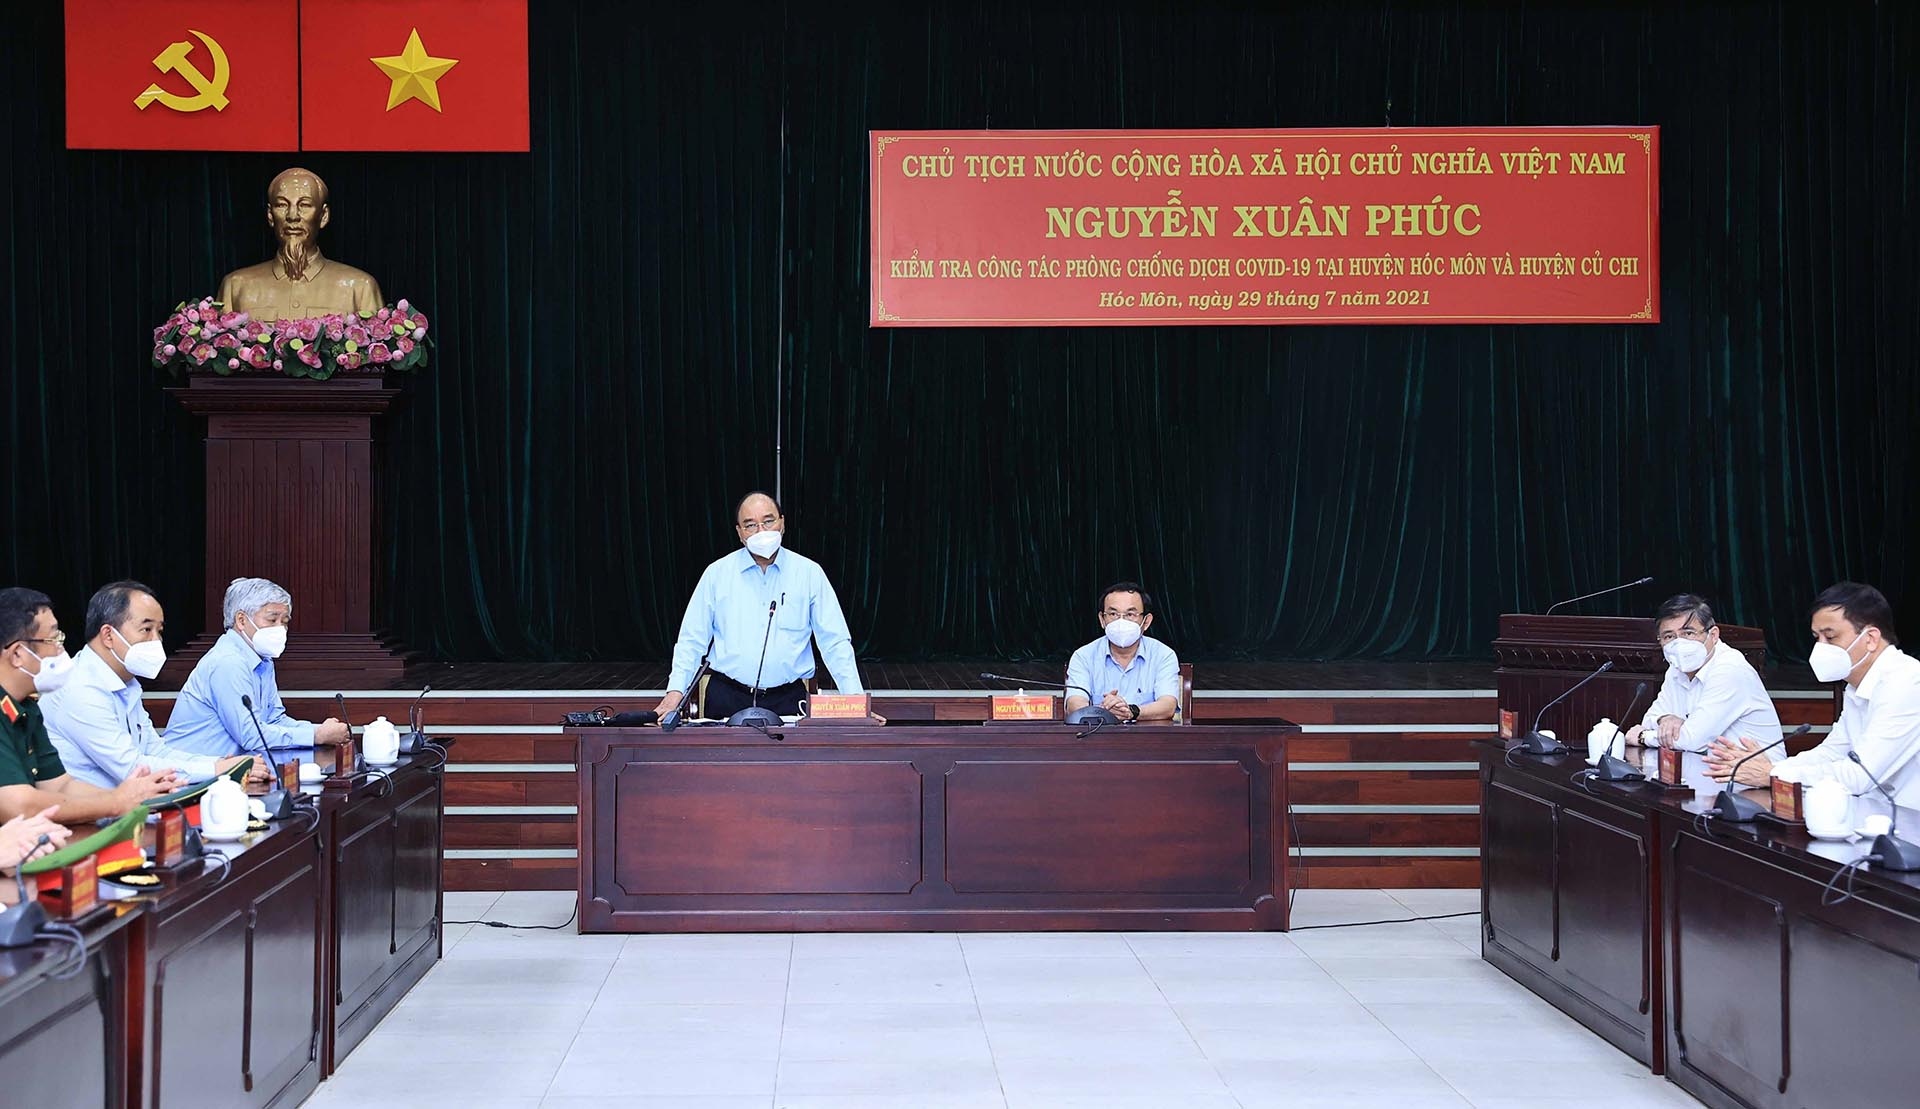 Chủ tịch nước Nguyễn Xuân Phúc phát biểu tại buổi làm việc với lãnh đạo huyện Hóc Môn và huyện Củ Chi về công tác phòng, chống dịch Covid-19. (Nguồn: TTXVN)